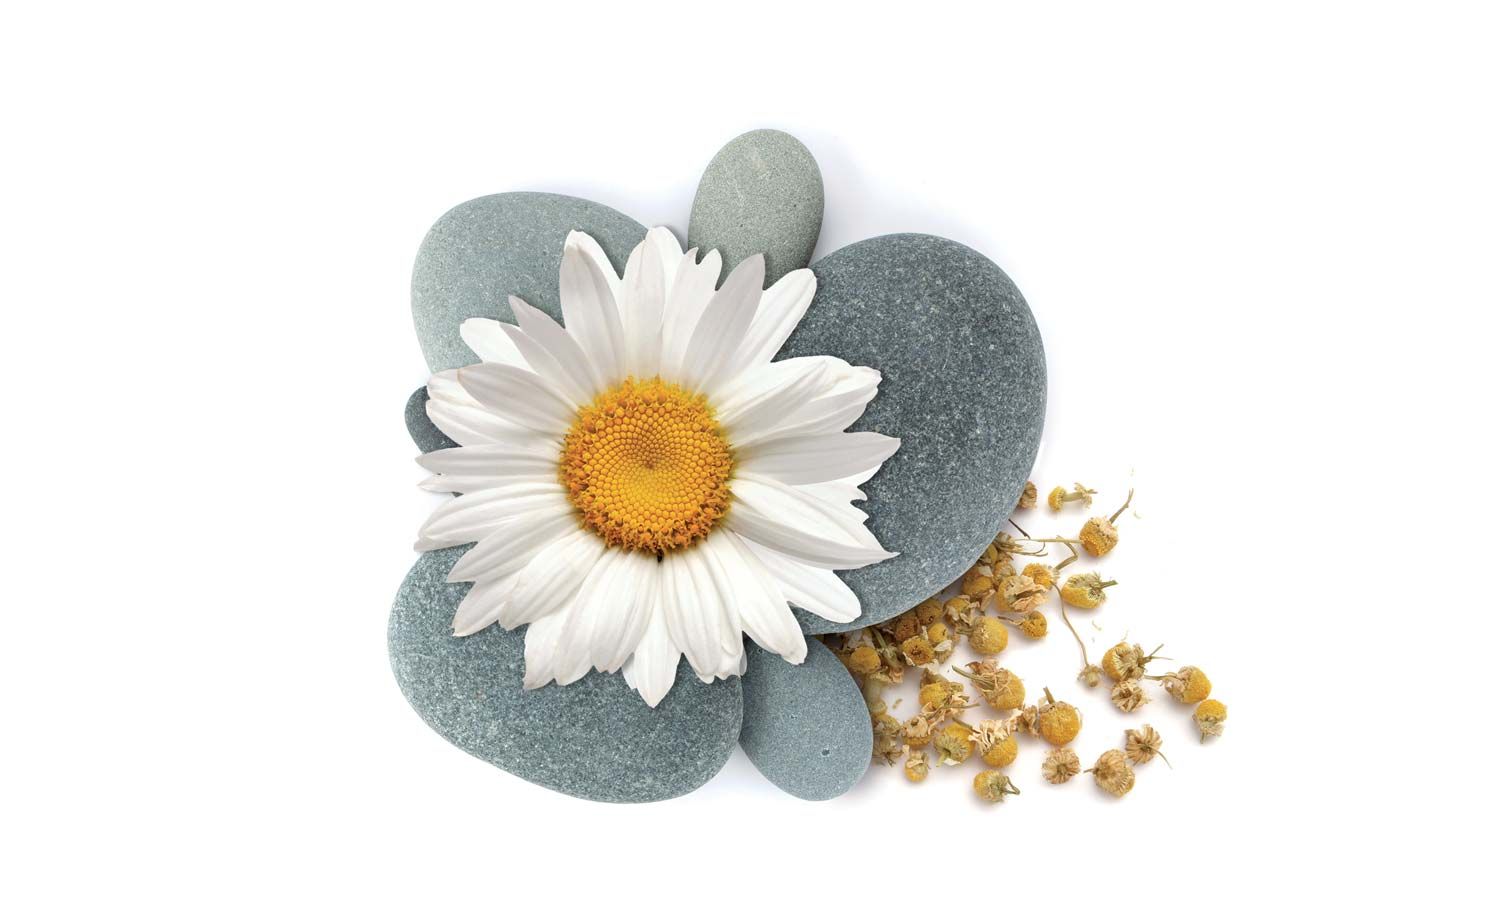 Fiori freschi e secchi di camomilla su pietre usati nel packaging design di prodotti cosmetici naturali realizzato da WillBe